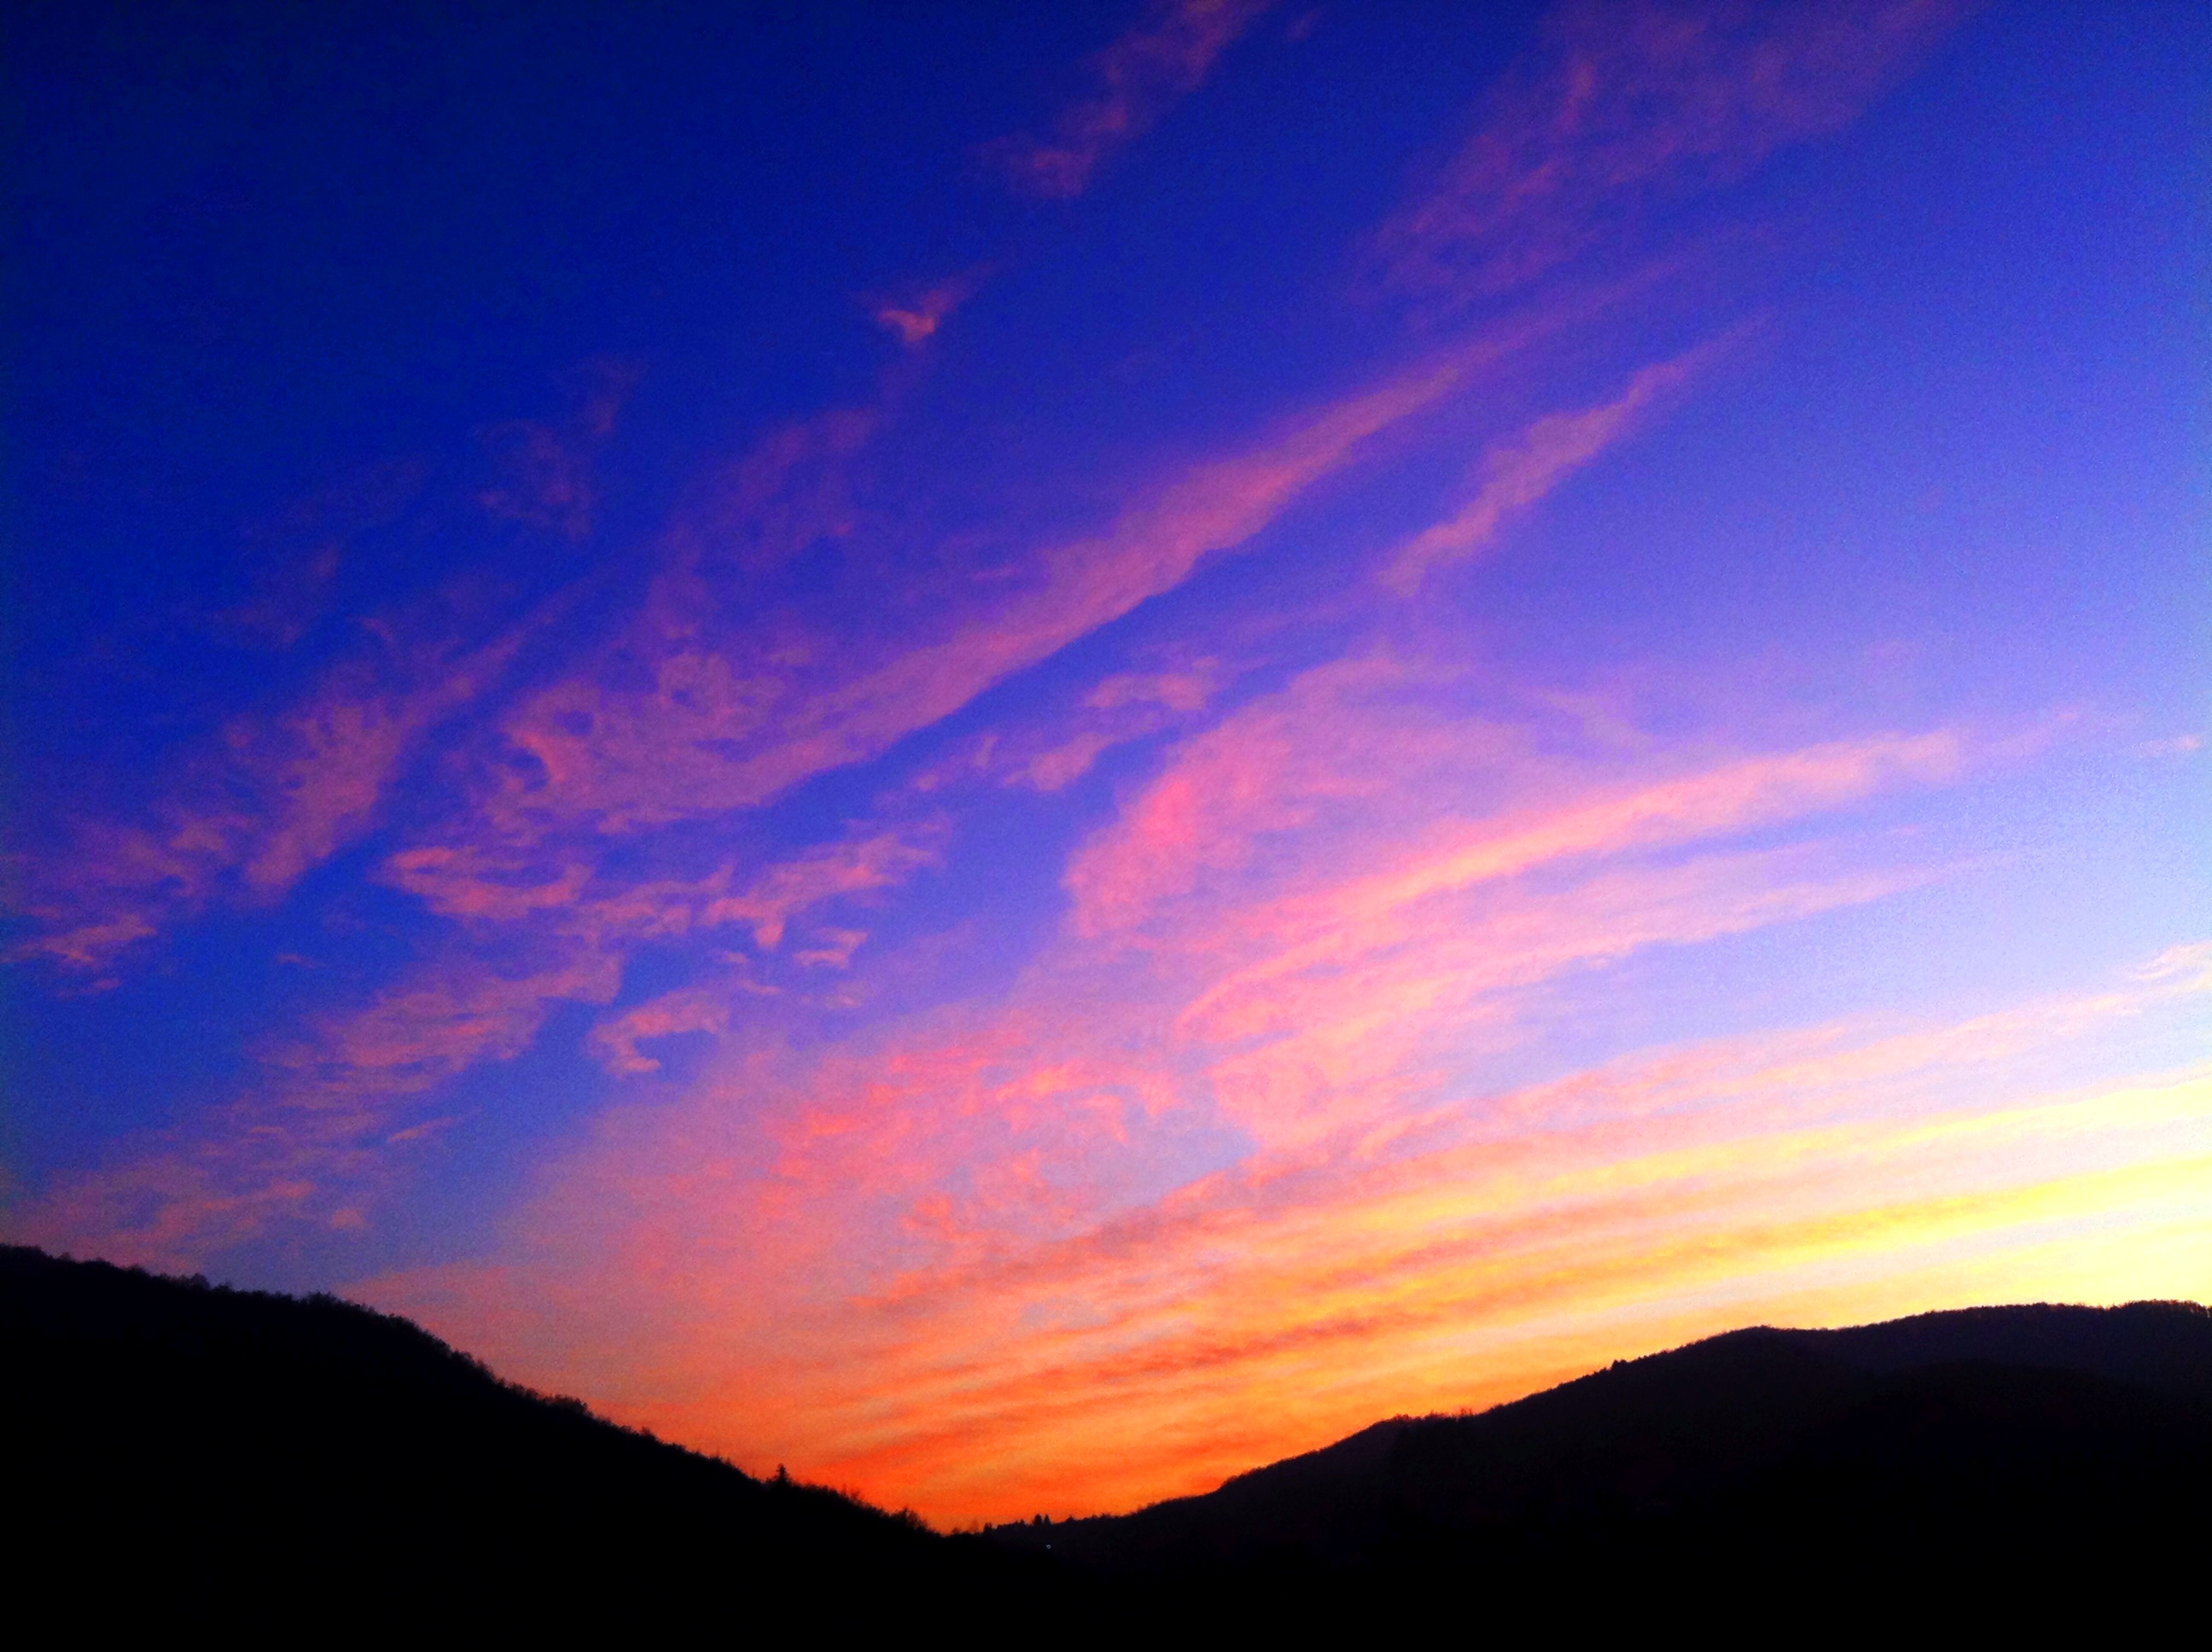 無料写真素材 自然風景 空 朝焼け 夕焼け 雲 風景イタリア画像素材なら 無料 フリー写真素材のフリーフォト